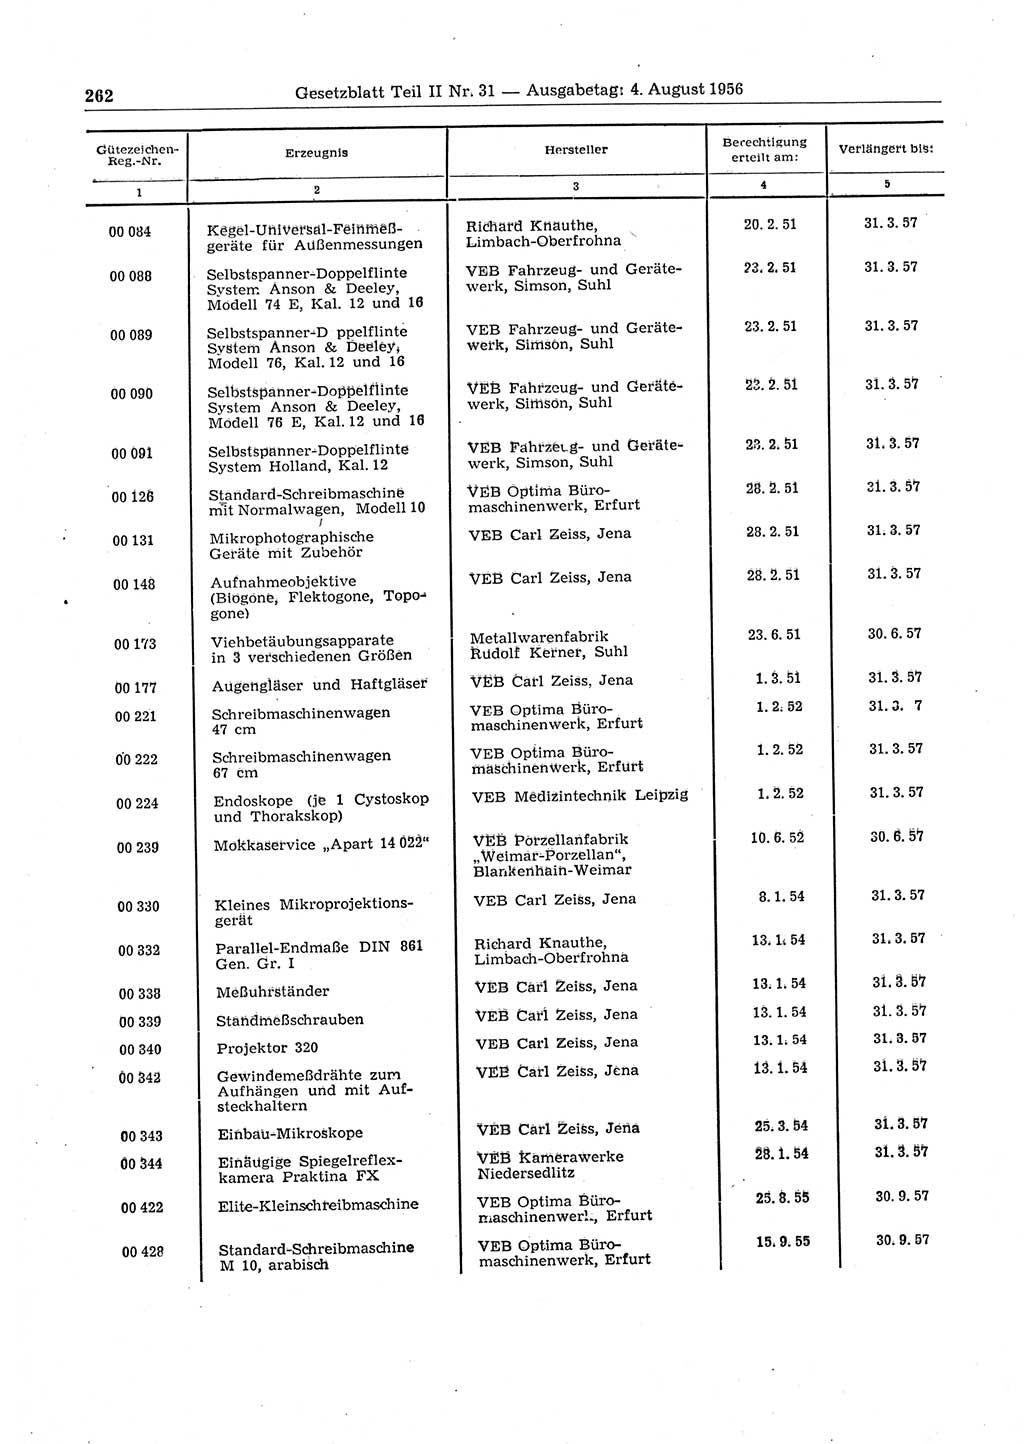 Gesetzblatt (GBl.) der Deutschen Demokratischen Republik (DDR) Teil ⅠⅠ 1956, Seite 262 (GBl. DDR ⅠⅠ 1956, S. 262)